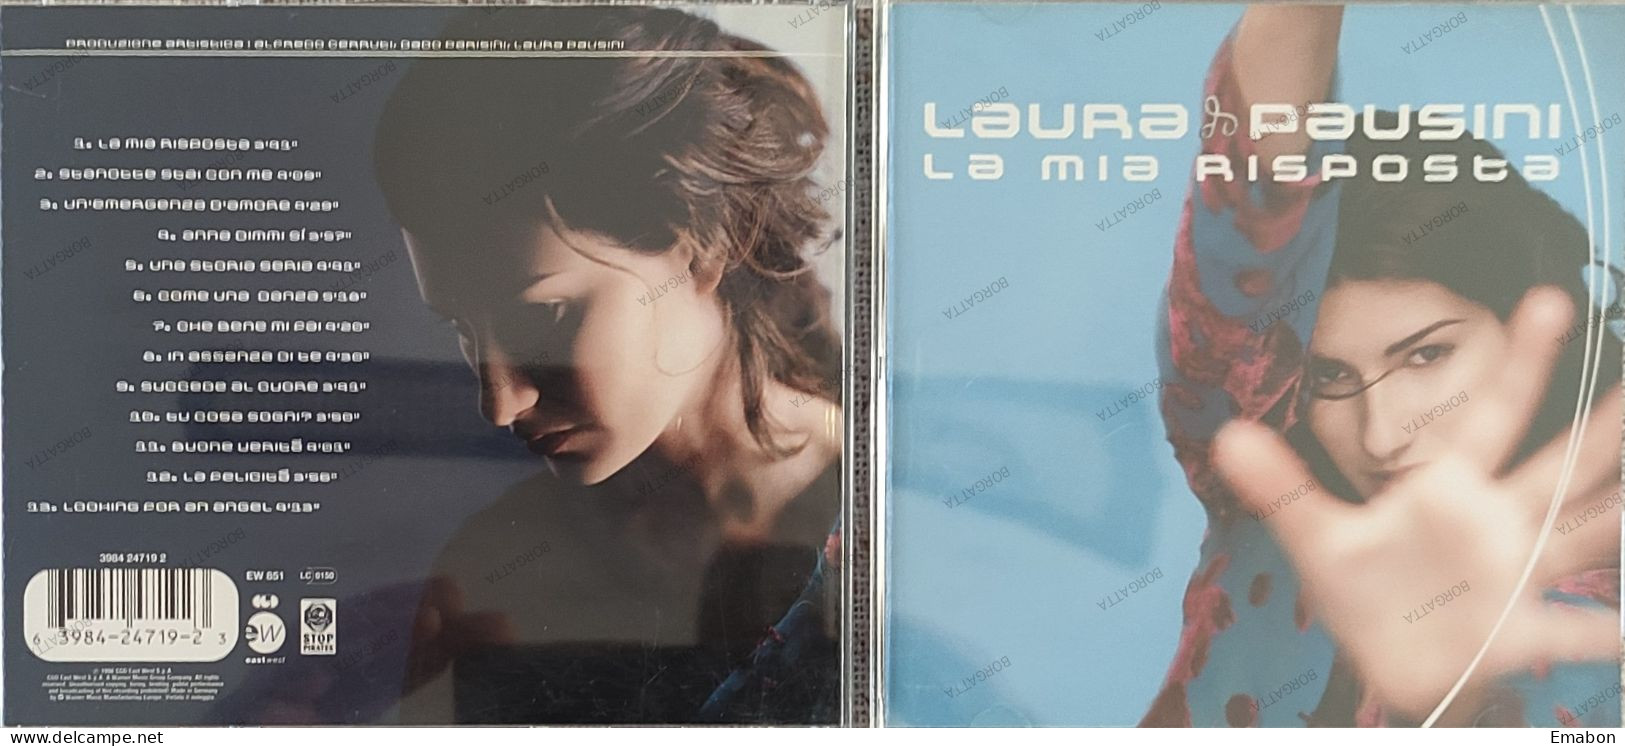 BORGATTA - ITALIANA  - Cd LAURA PAUSINI - LA MIA RISPOSTA  - CGD EAST 1998 -  USATO In Buono Stato - Autres - Musique Italienne